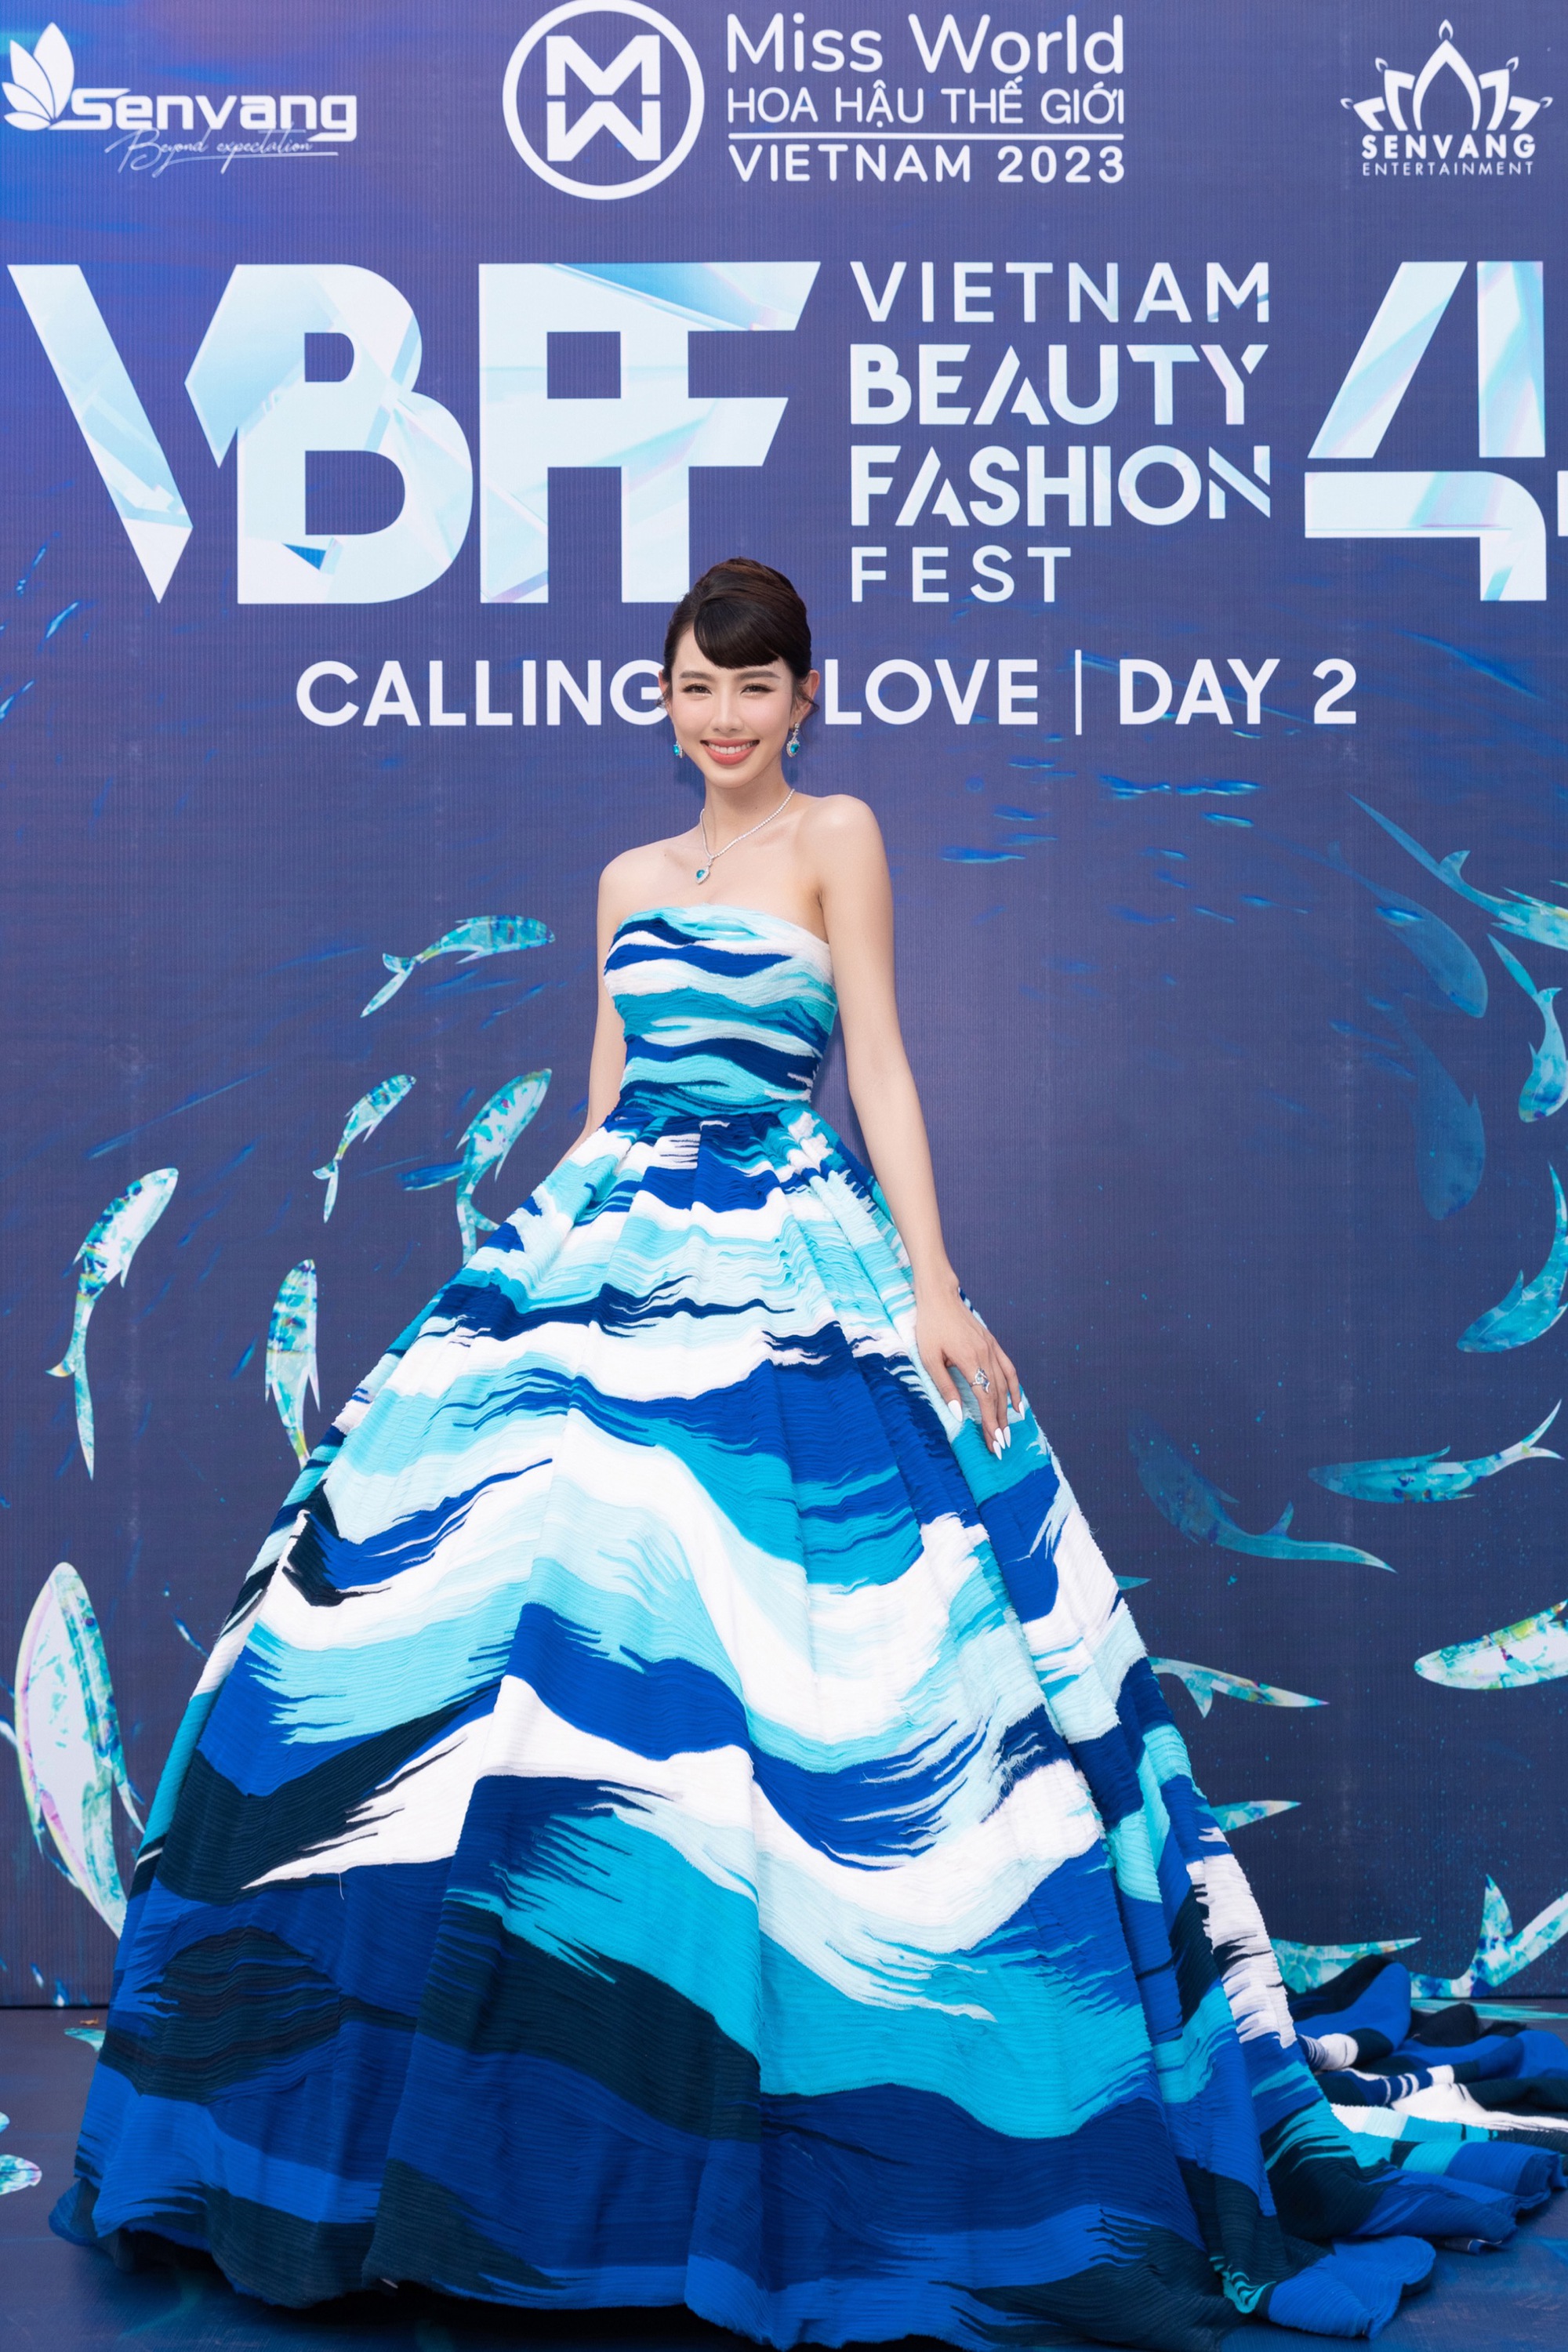 Đông đảo người đẹp khoe sắc trên thảm đỏ Vietnam Beauty Fashion Fest 4  - Ảnh 9.